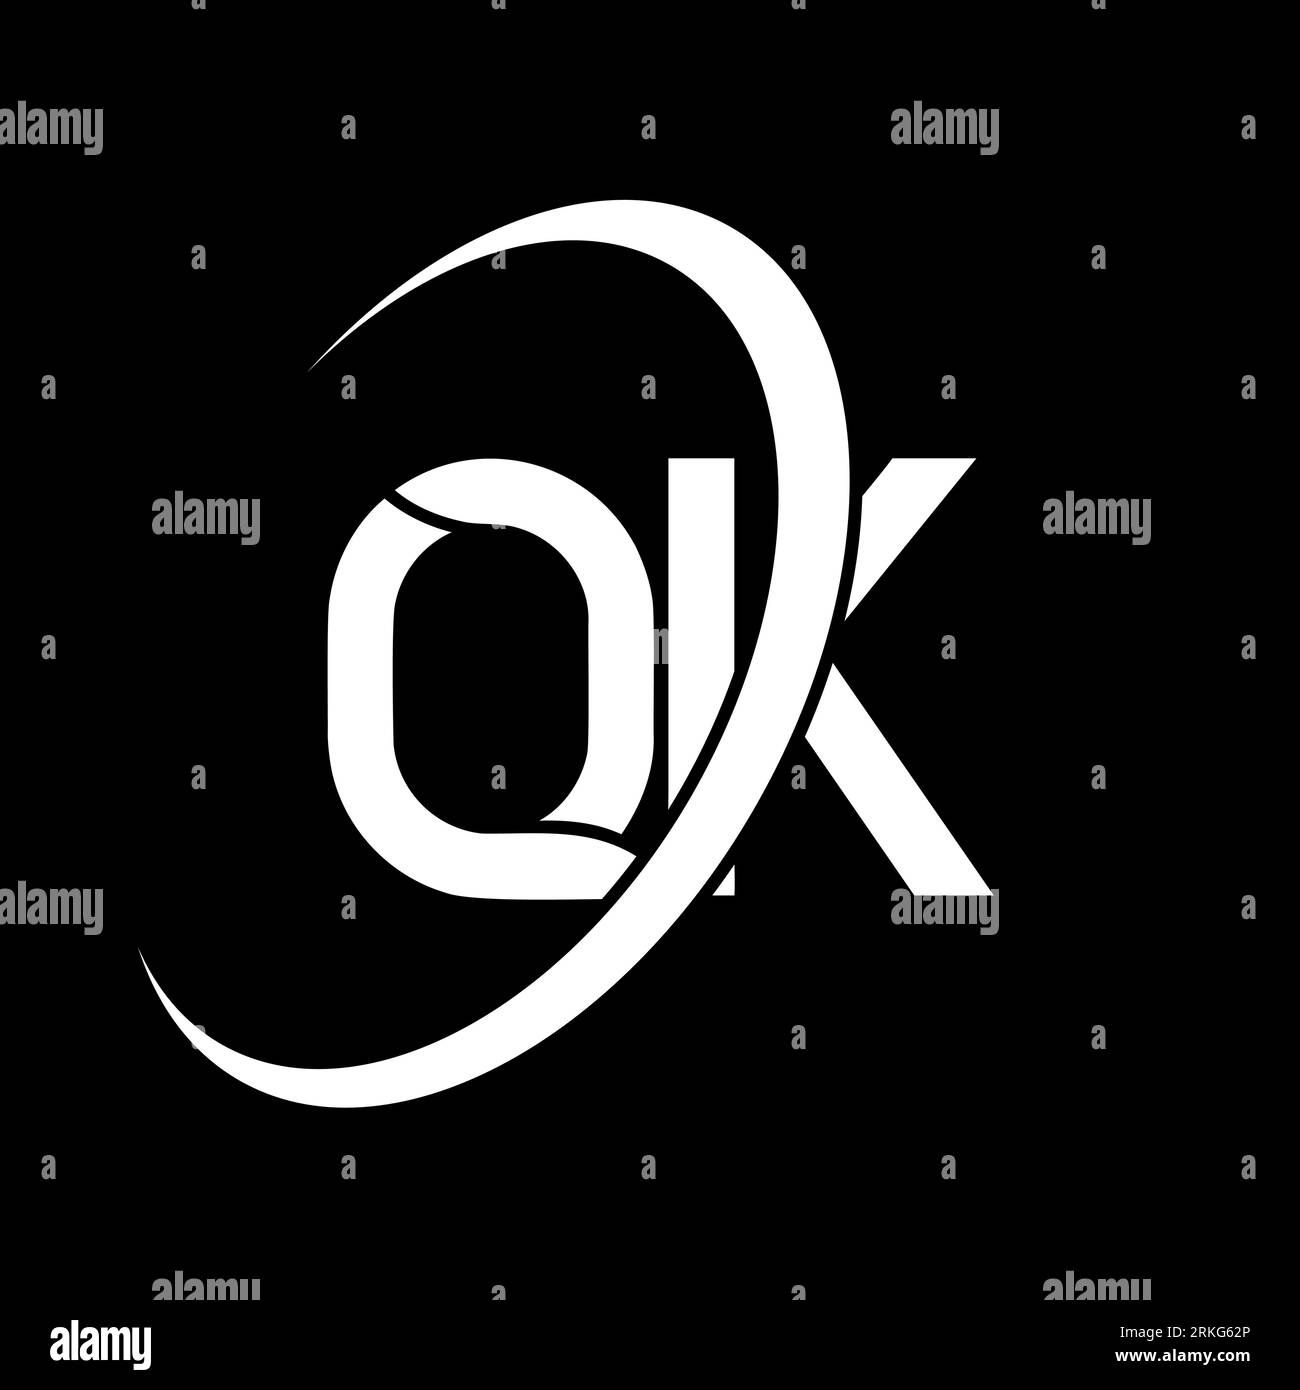 QK logo. Q K design. White QK letter. QK/Q K letter logo design. Initial letter QK linked circle uppercase monogram logo. Stock Vector